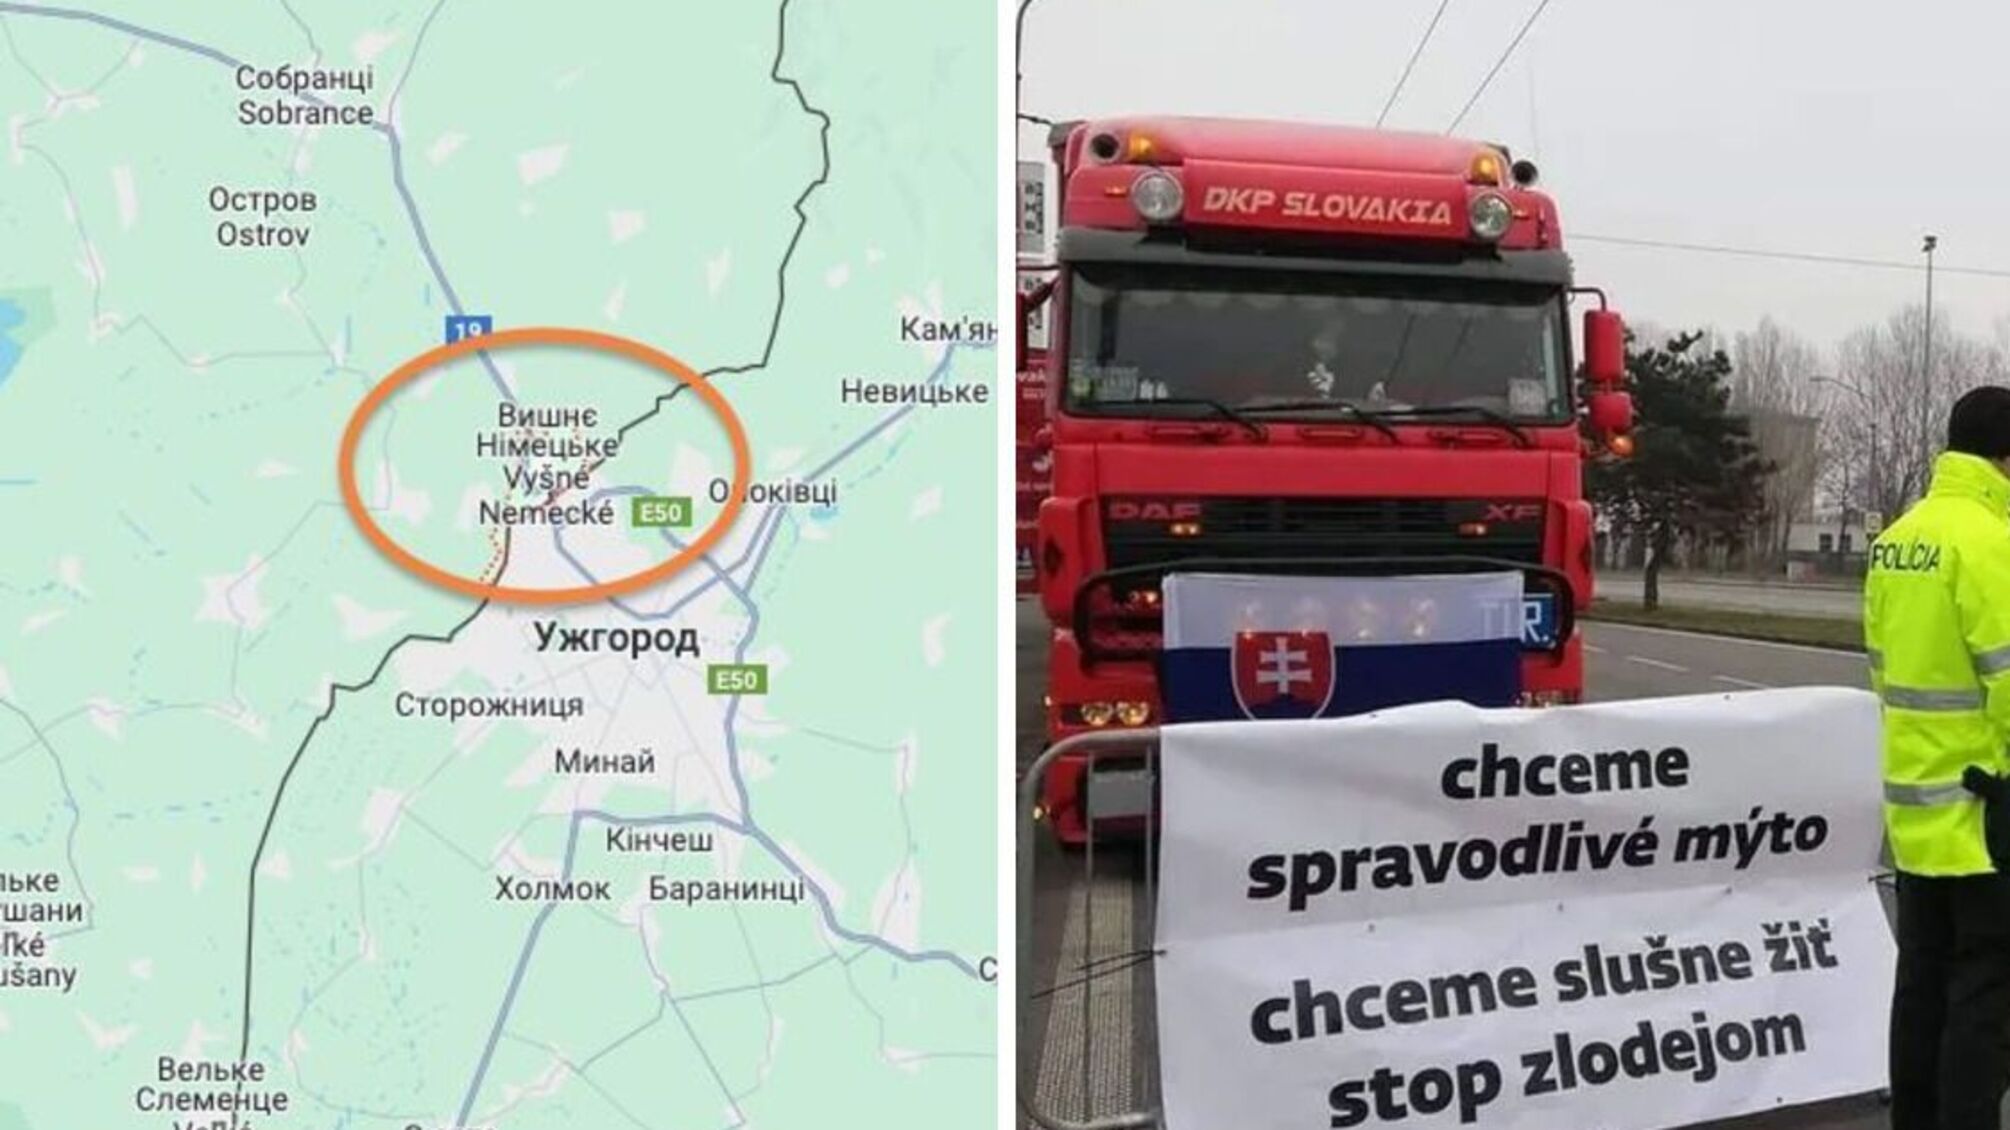 Дальнобойщики Словакии заблокируют пункт пропуска 'Вишне Немецкое-Ужгород' с 1 декабря